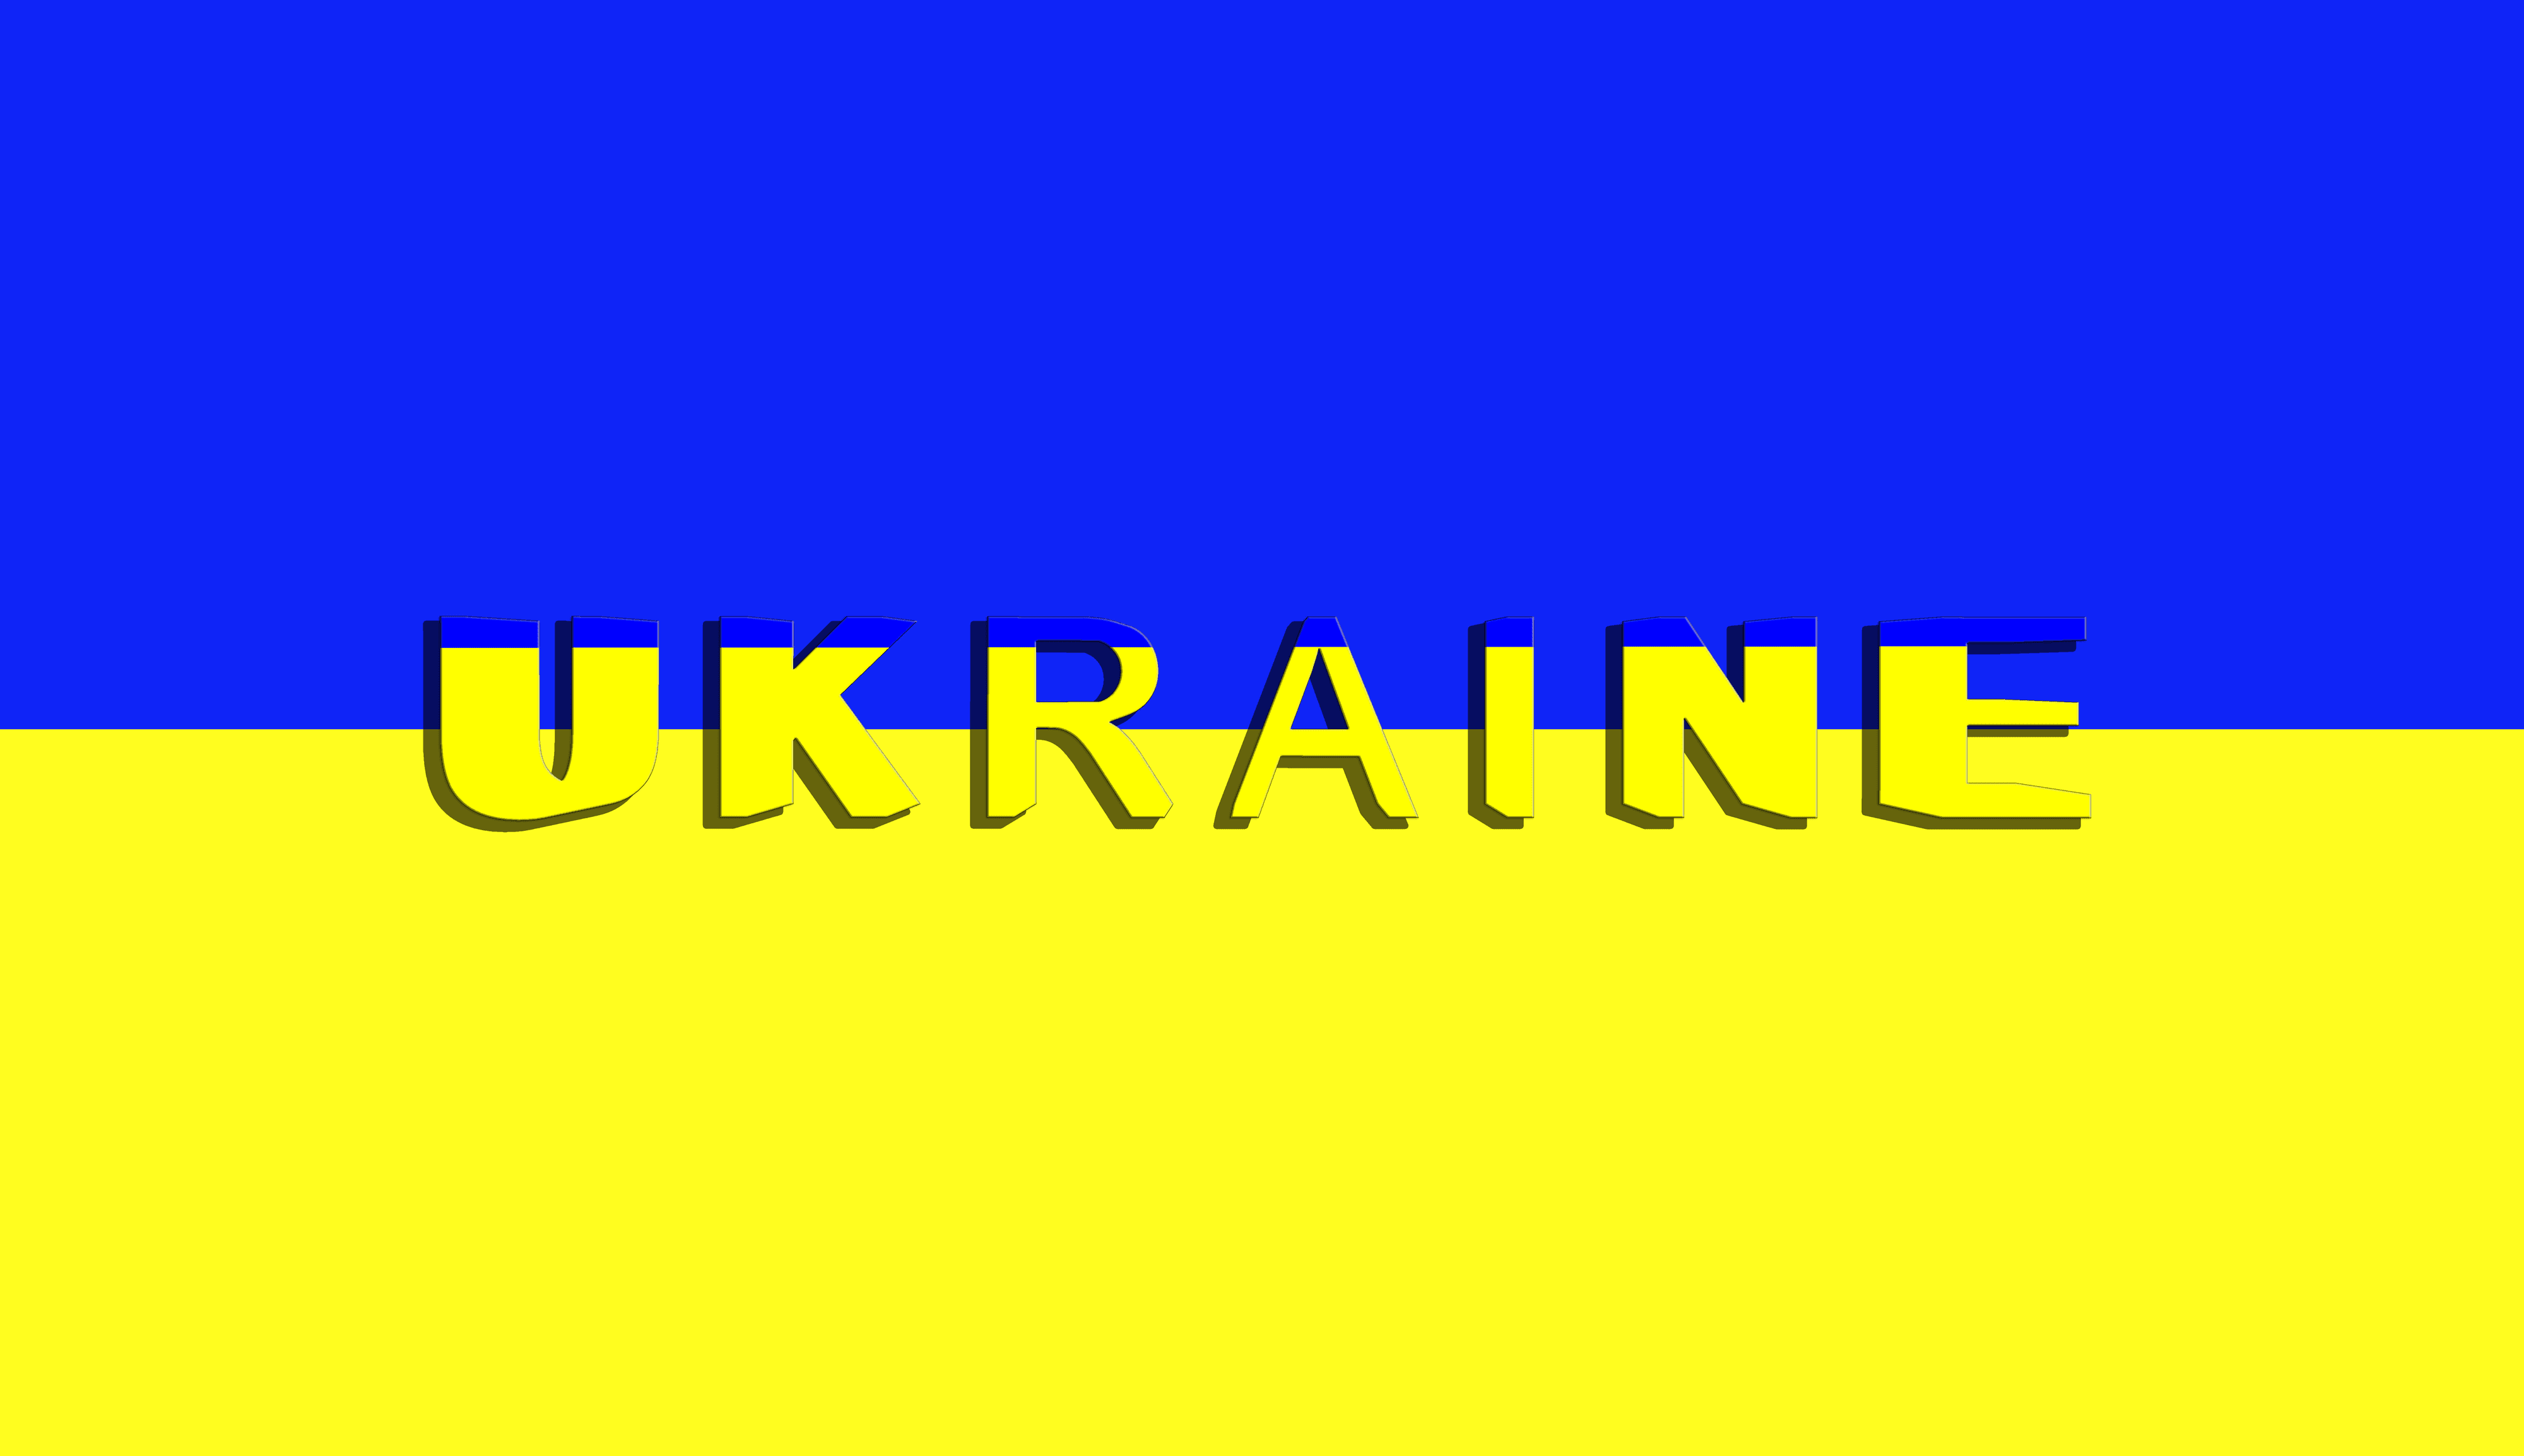 Flag of Ukraine with text "Ukraine"